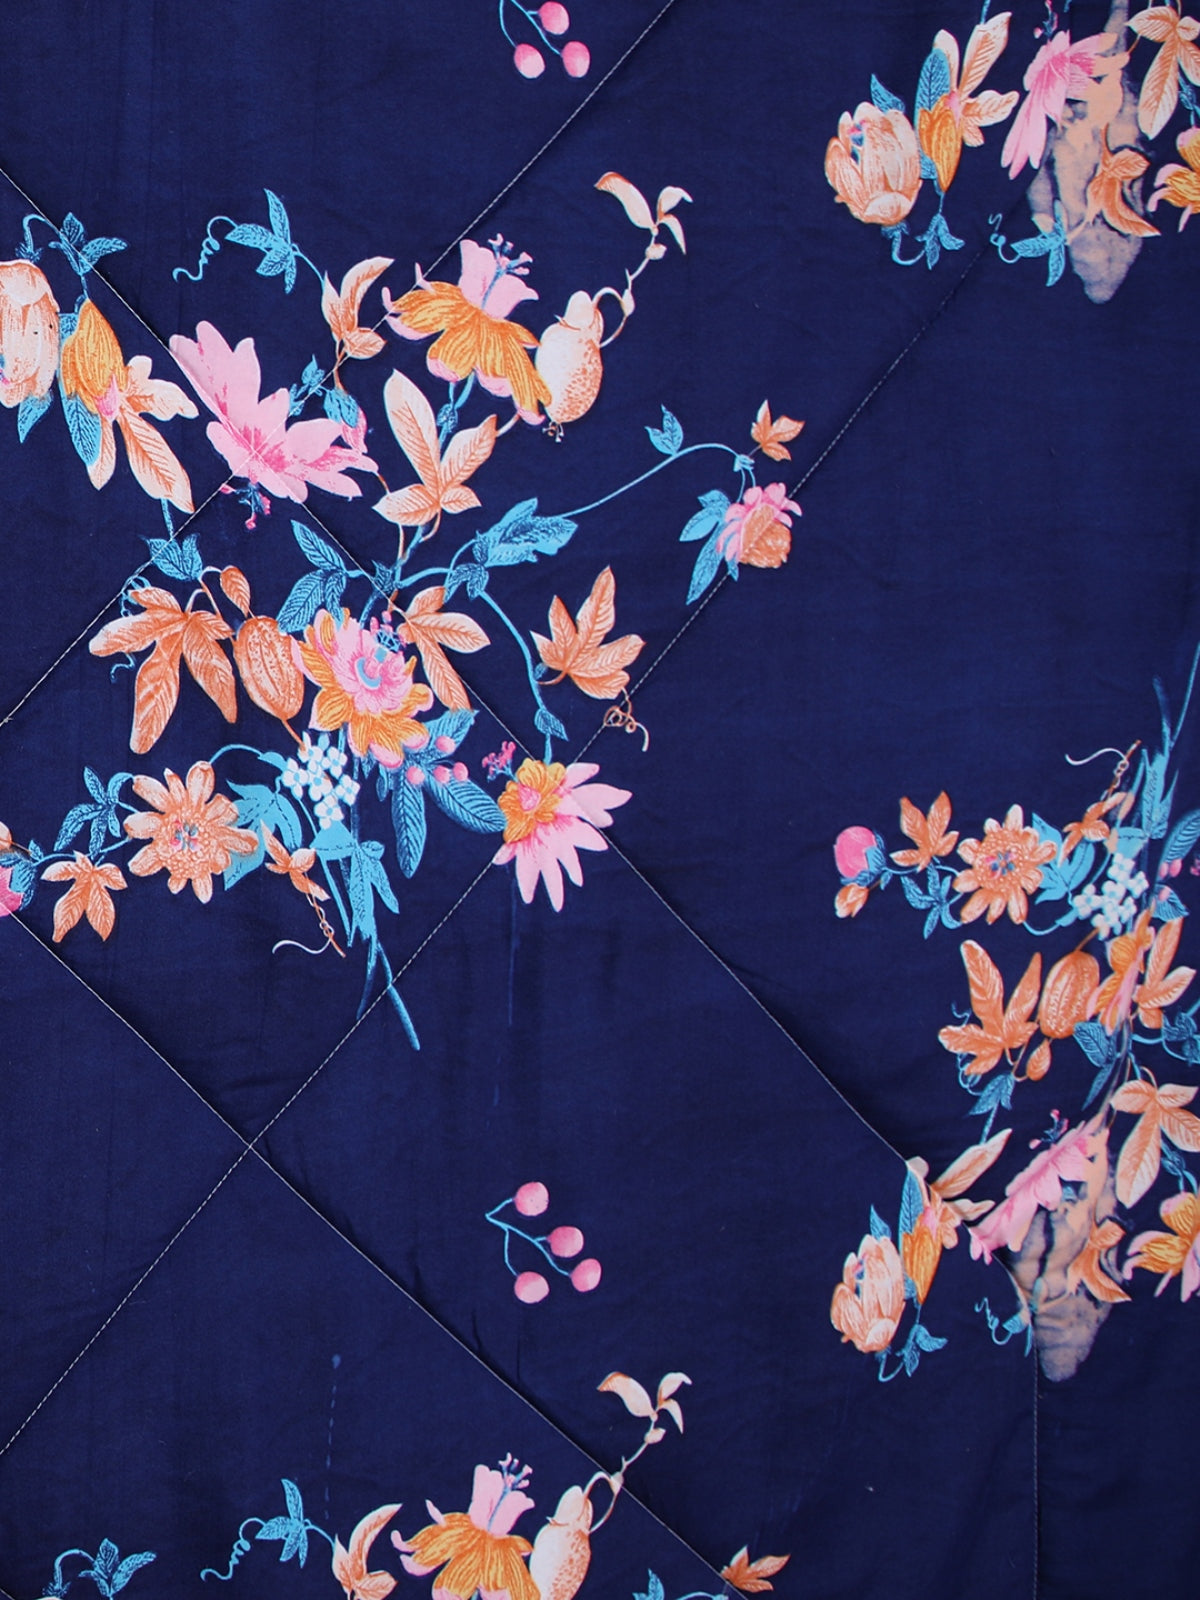 Royal Blue Floral Patterned King Size Cotton Bedding Set